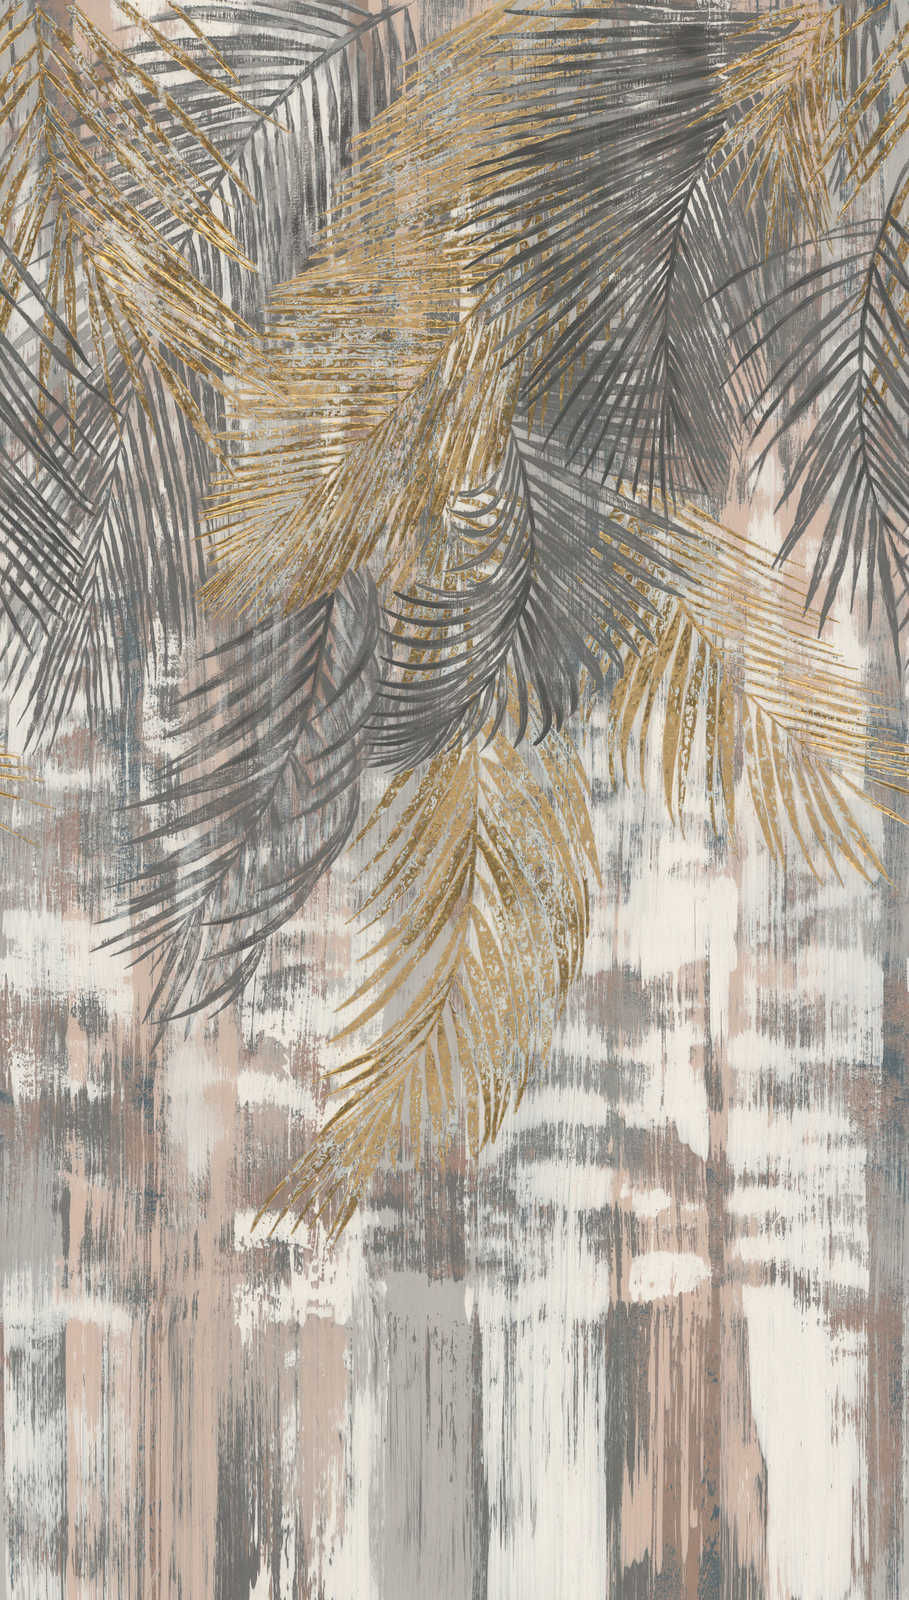             Carta da parati in tessuto non tessuto grandi foglie di palma in look used - grigio, giallo, beige
        